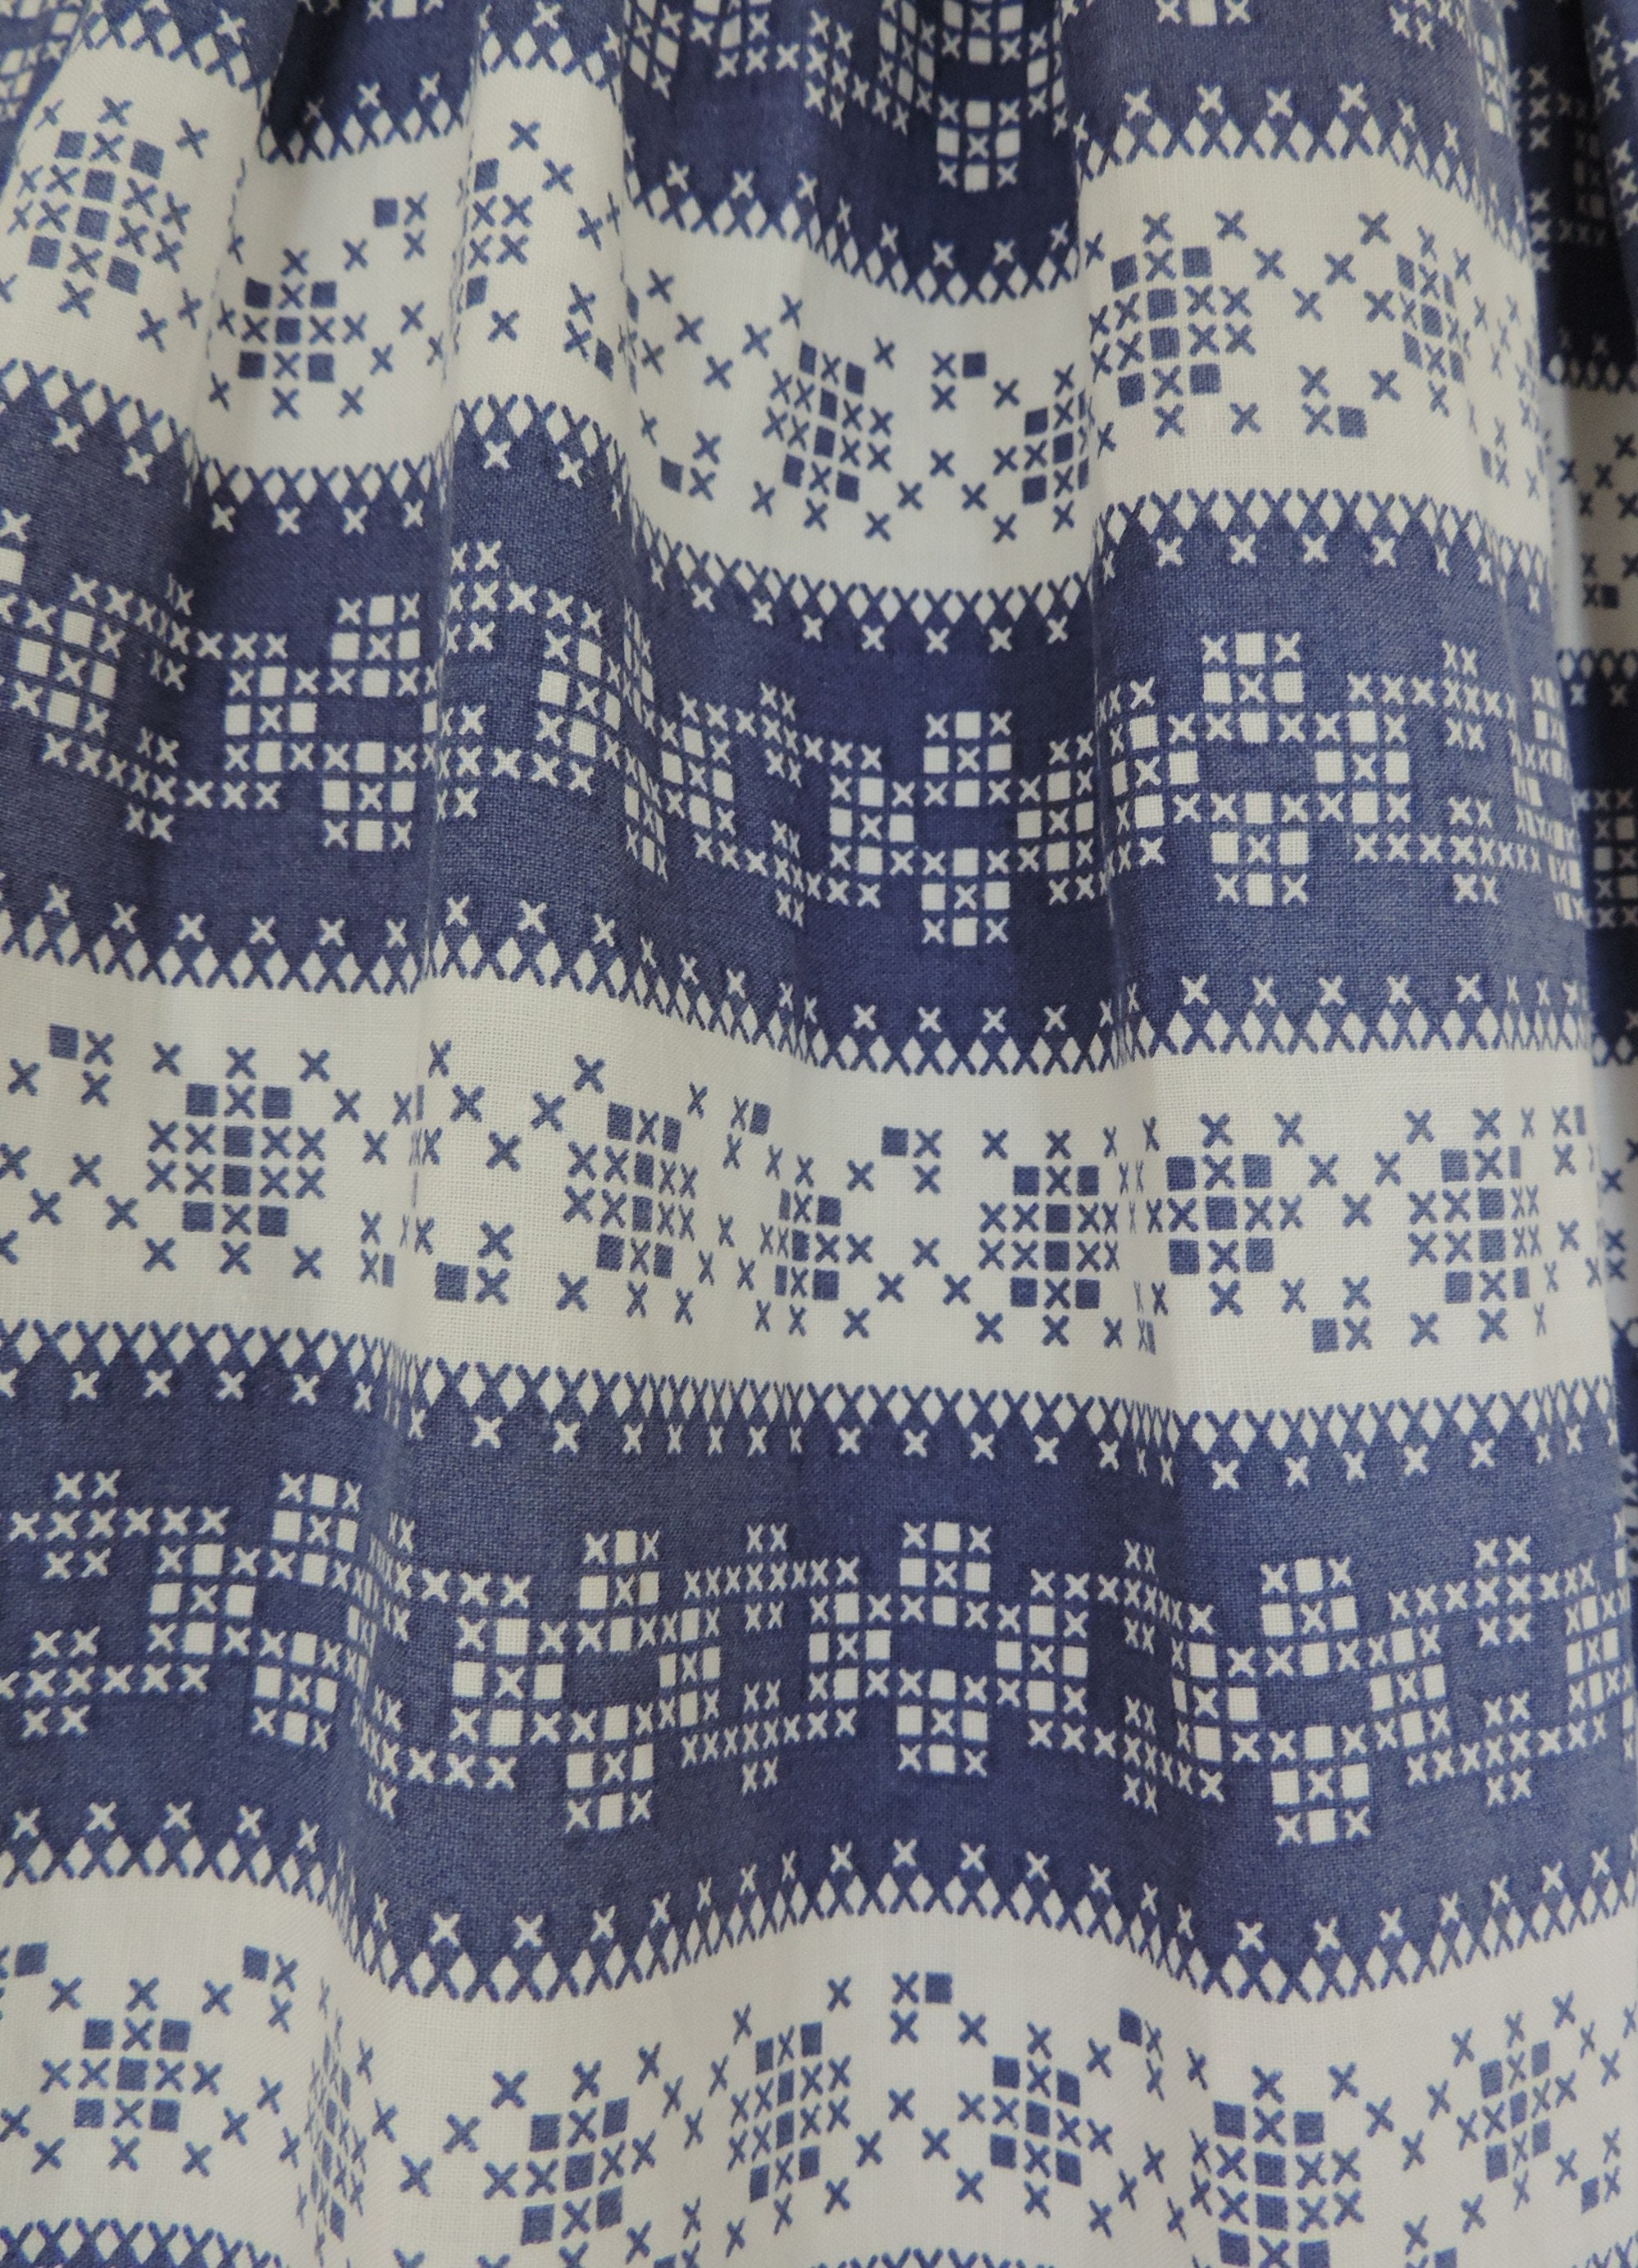 50s Full Skirt Dress in Blue & White Cotton Mid Century Print - Etsy UK